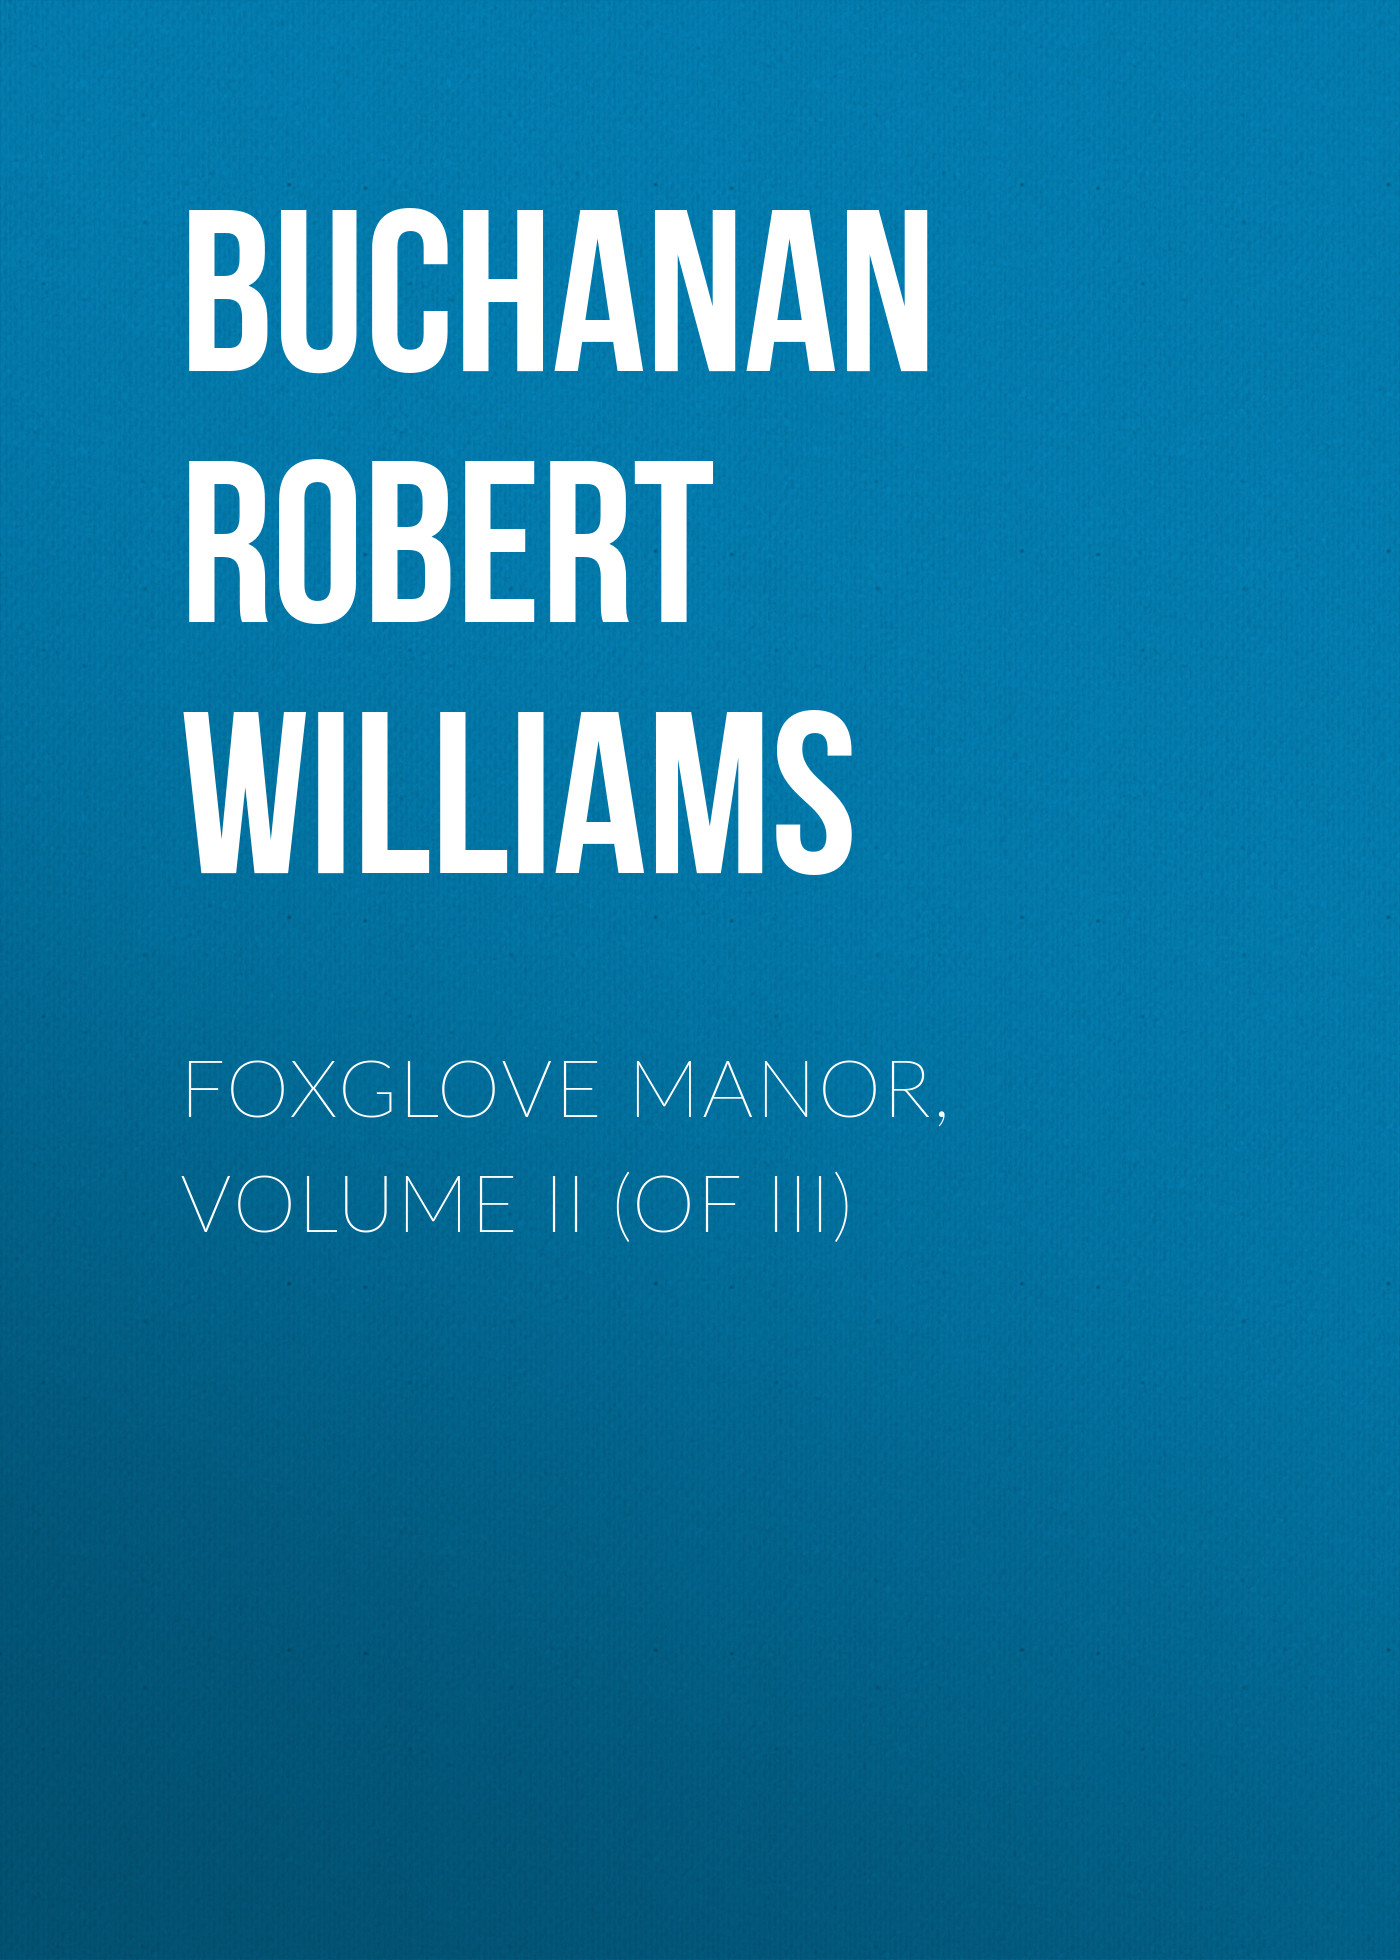 Книга Foxglove Manor, Volume II (of III) из серии , созданная Robert Buchanan, может относится к жанру Зарубежная старинная литература, Зарубежная классика. Стоимость электронной книги Foxglove Manor, Volume II (of III) с идентификатором 24180420 составляет 0 руб.